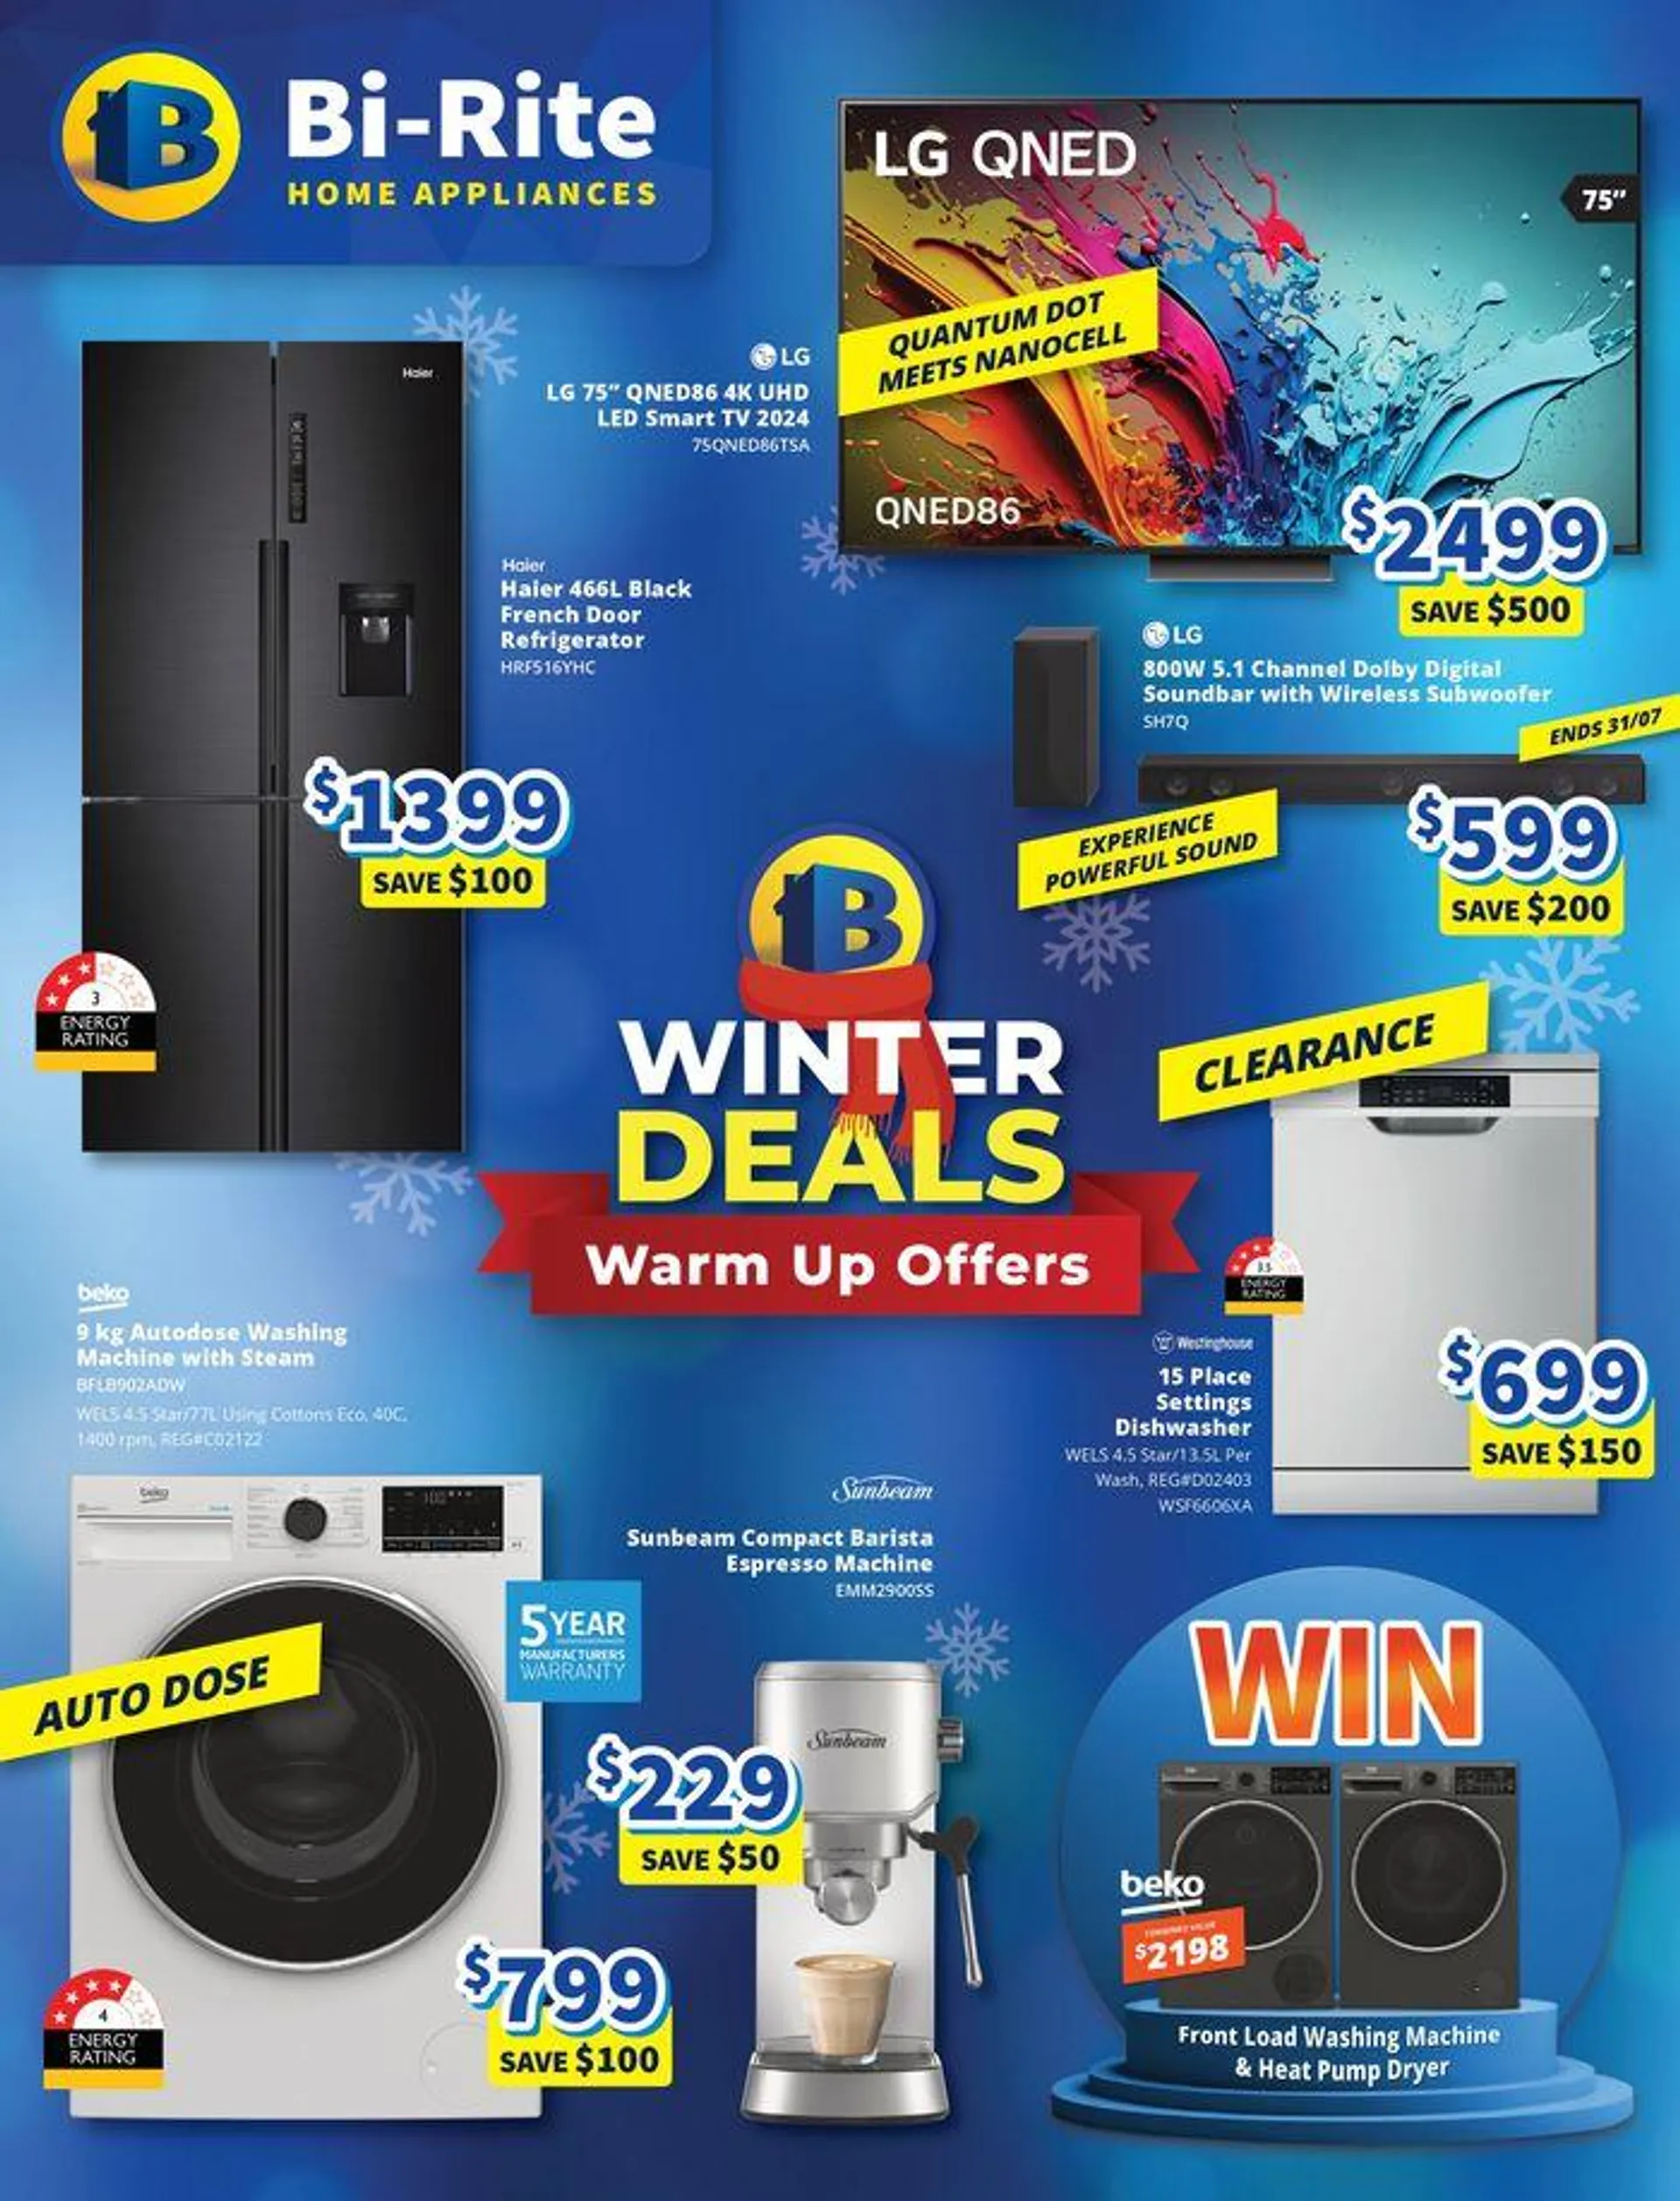 Winter Deals - Warm up Offers - 1